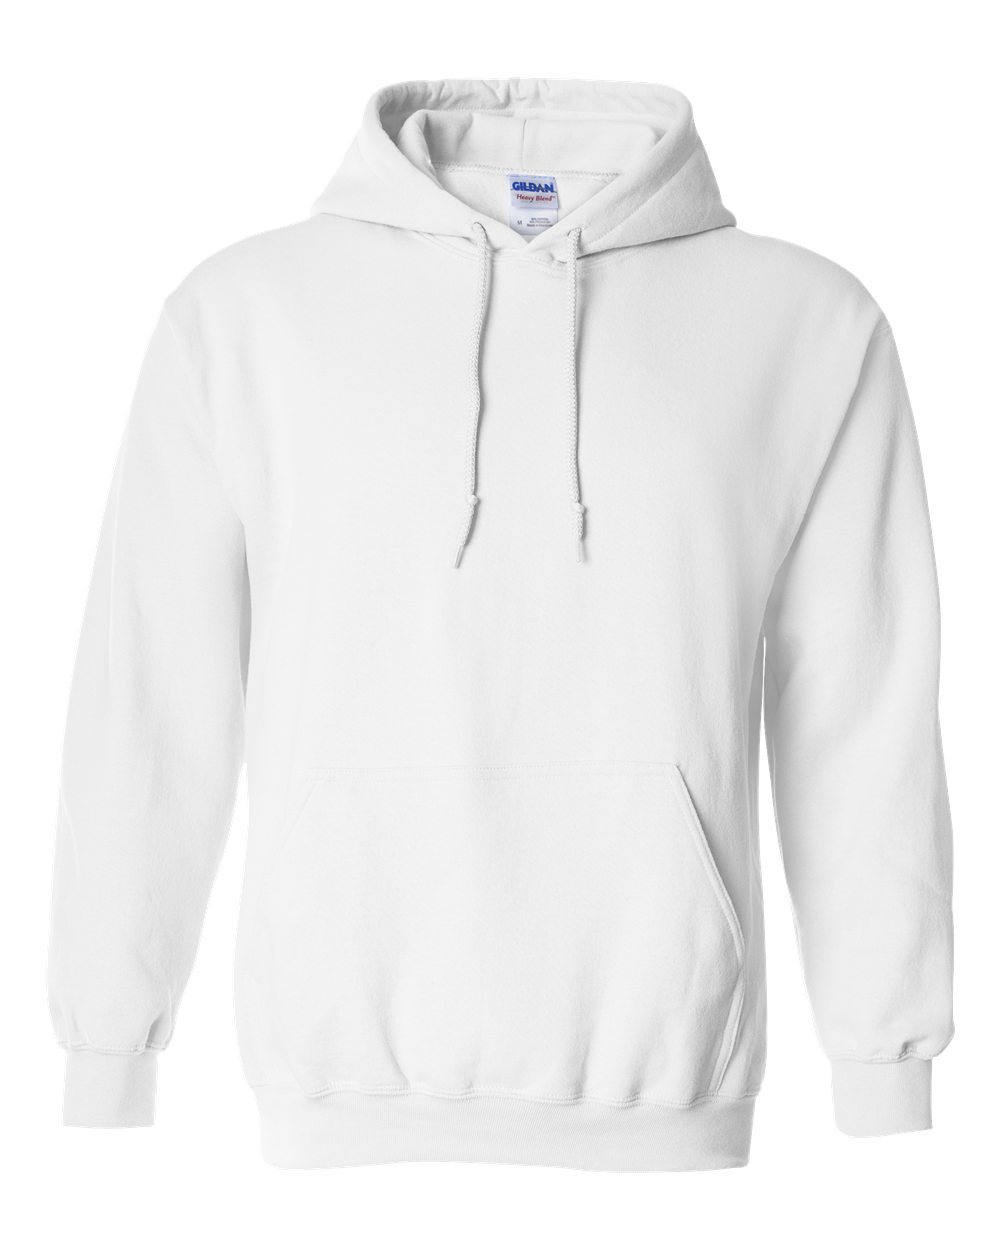 Gildan Mens Blank Hoodie Heavy Blend Hooded Sweatshirt 18500 up to 5XL 